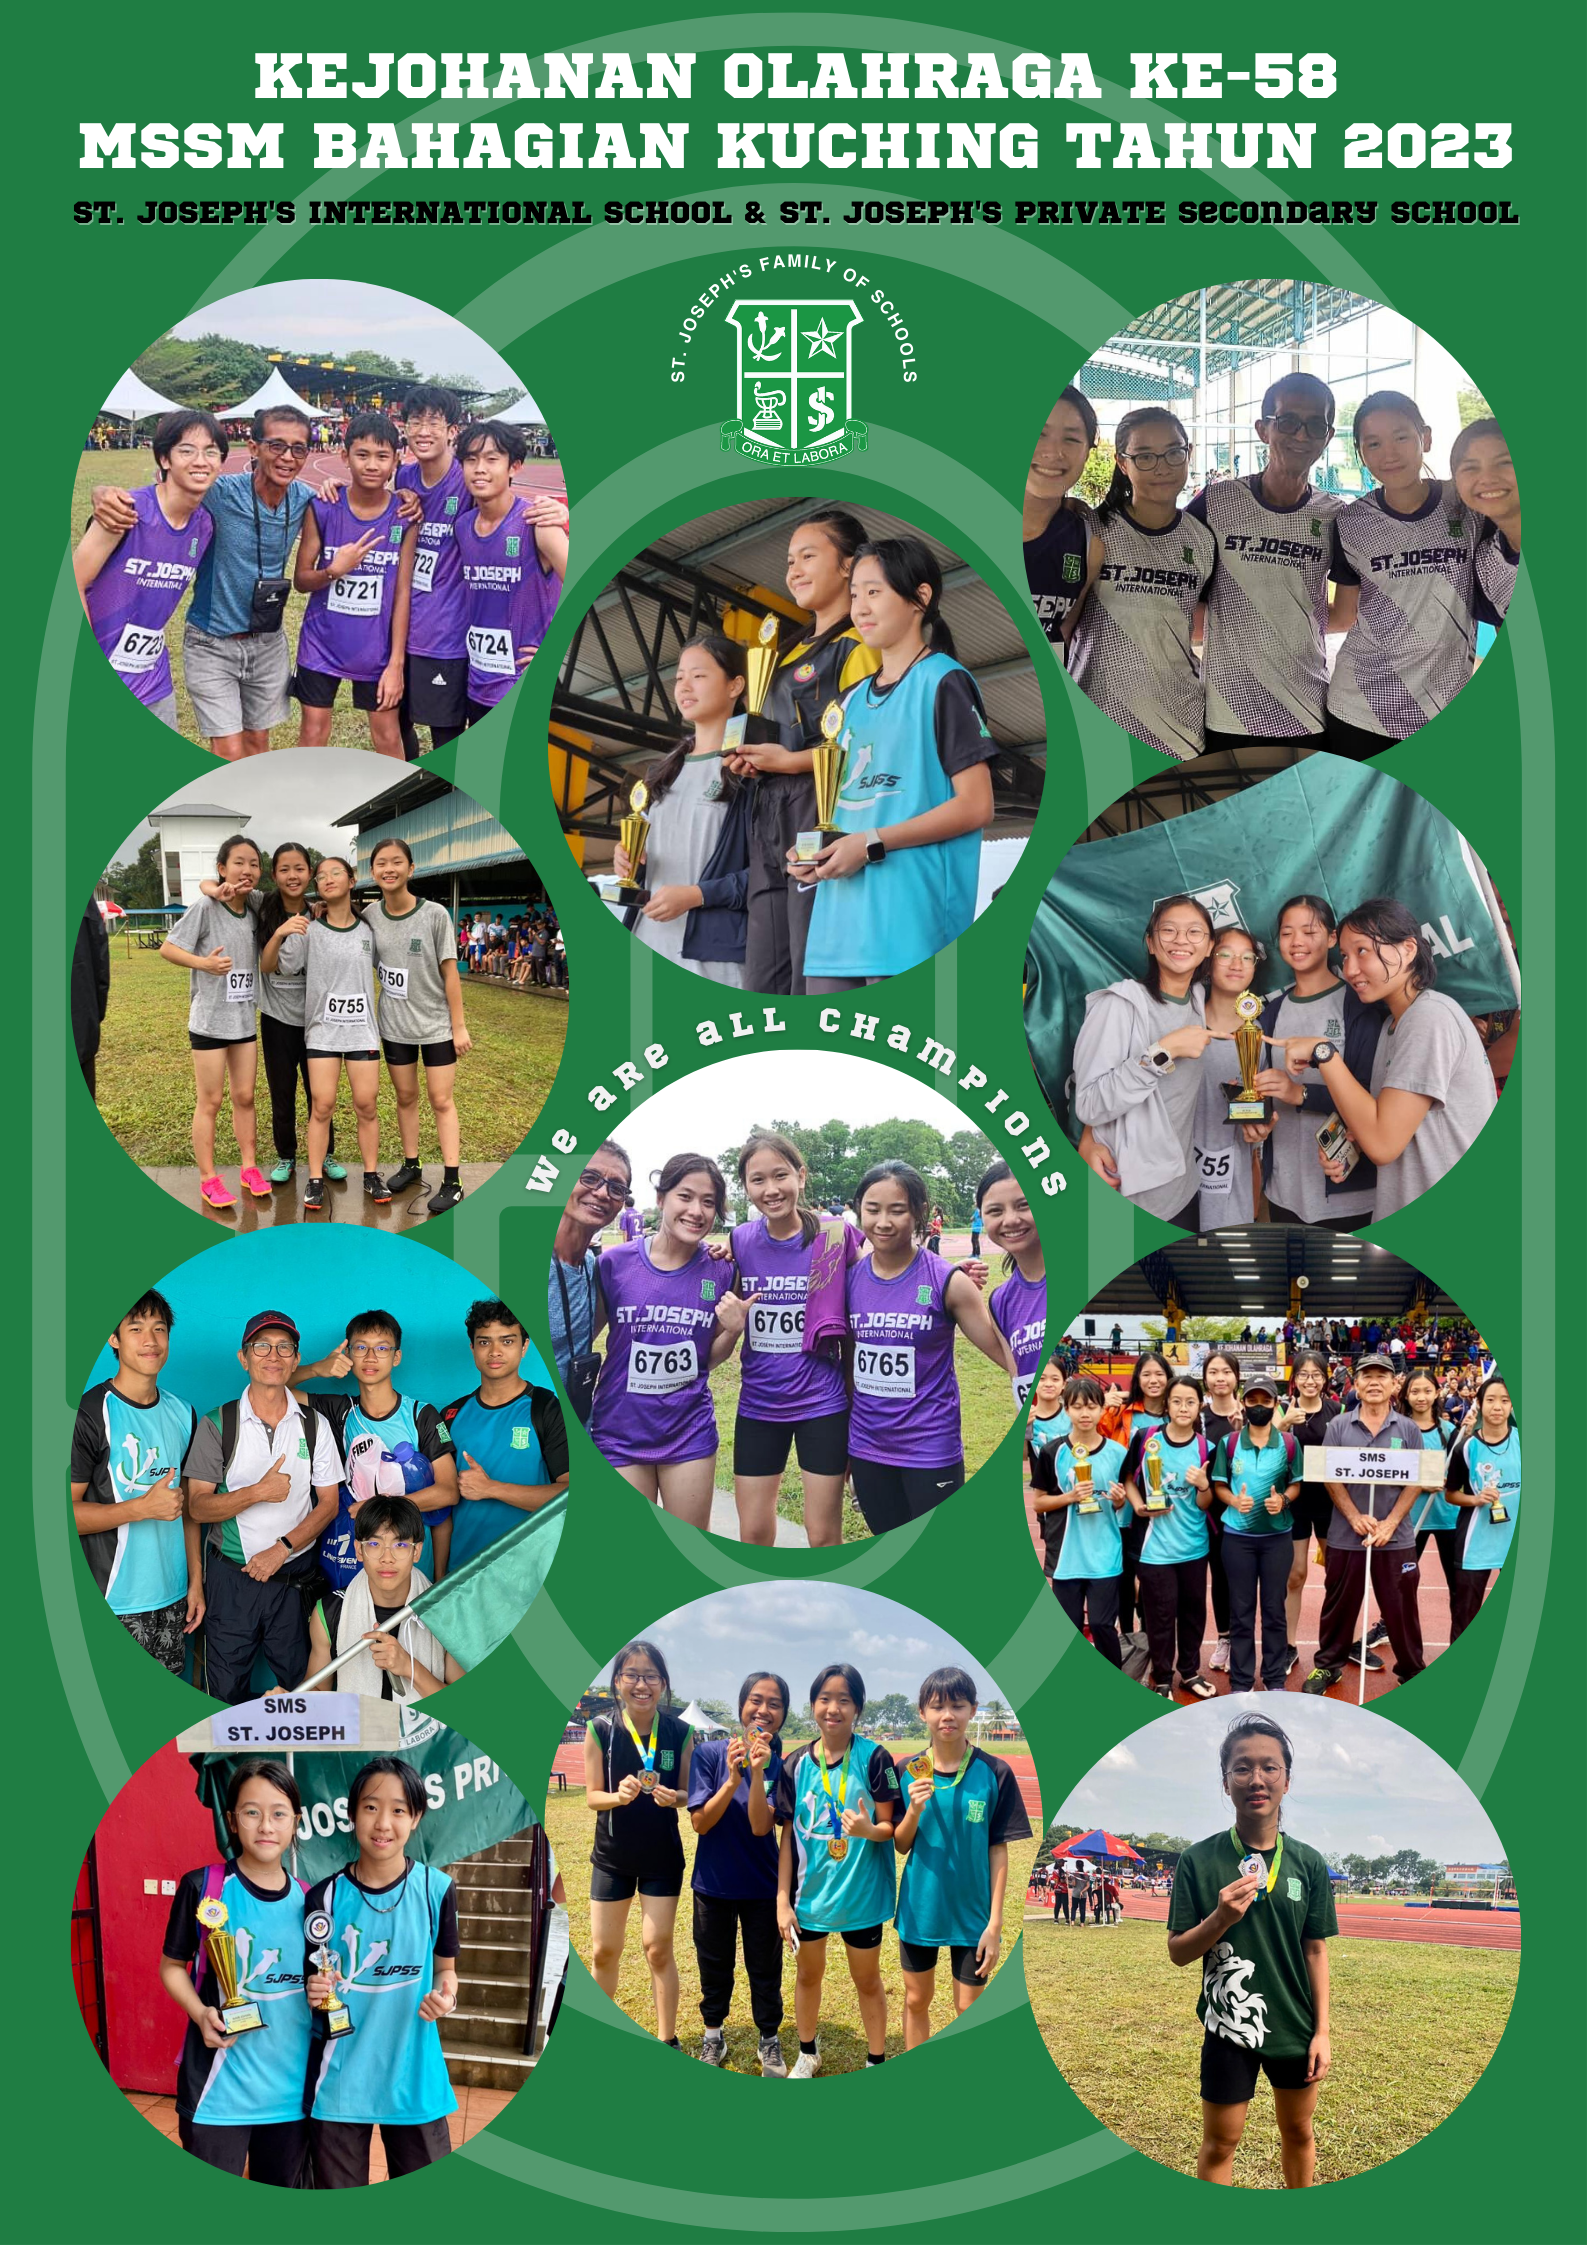 Kejohanan Olahraga Ke-58 MSSM Bahagian Kuching 2023 ~ Champions of SJIS & SJPSS.